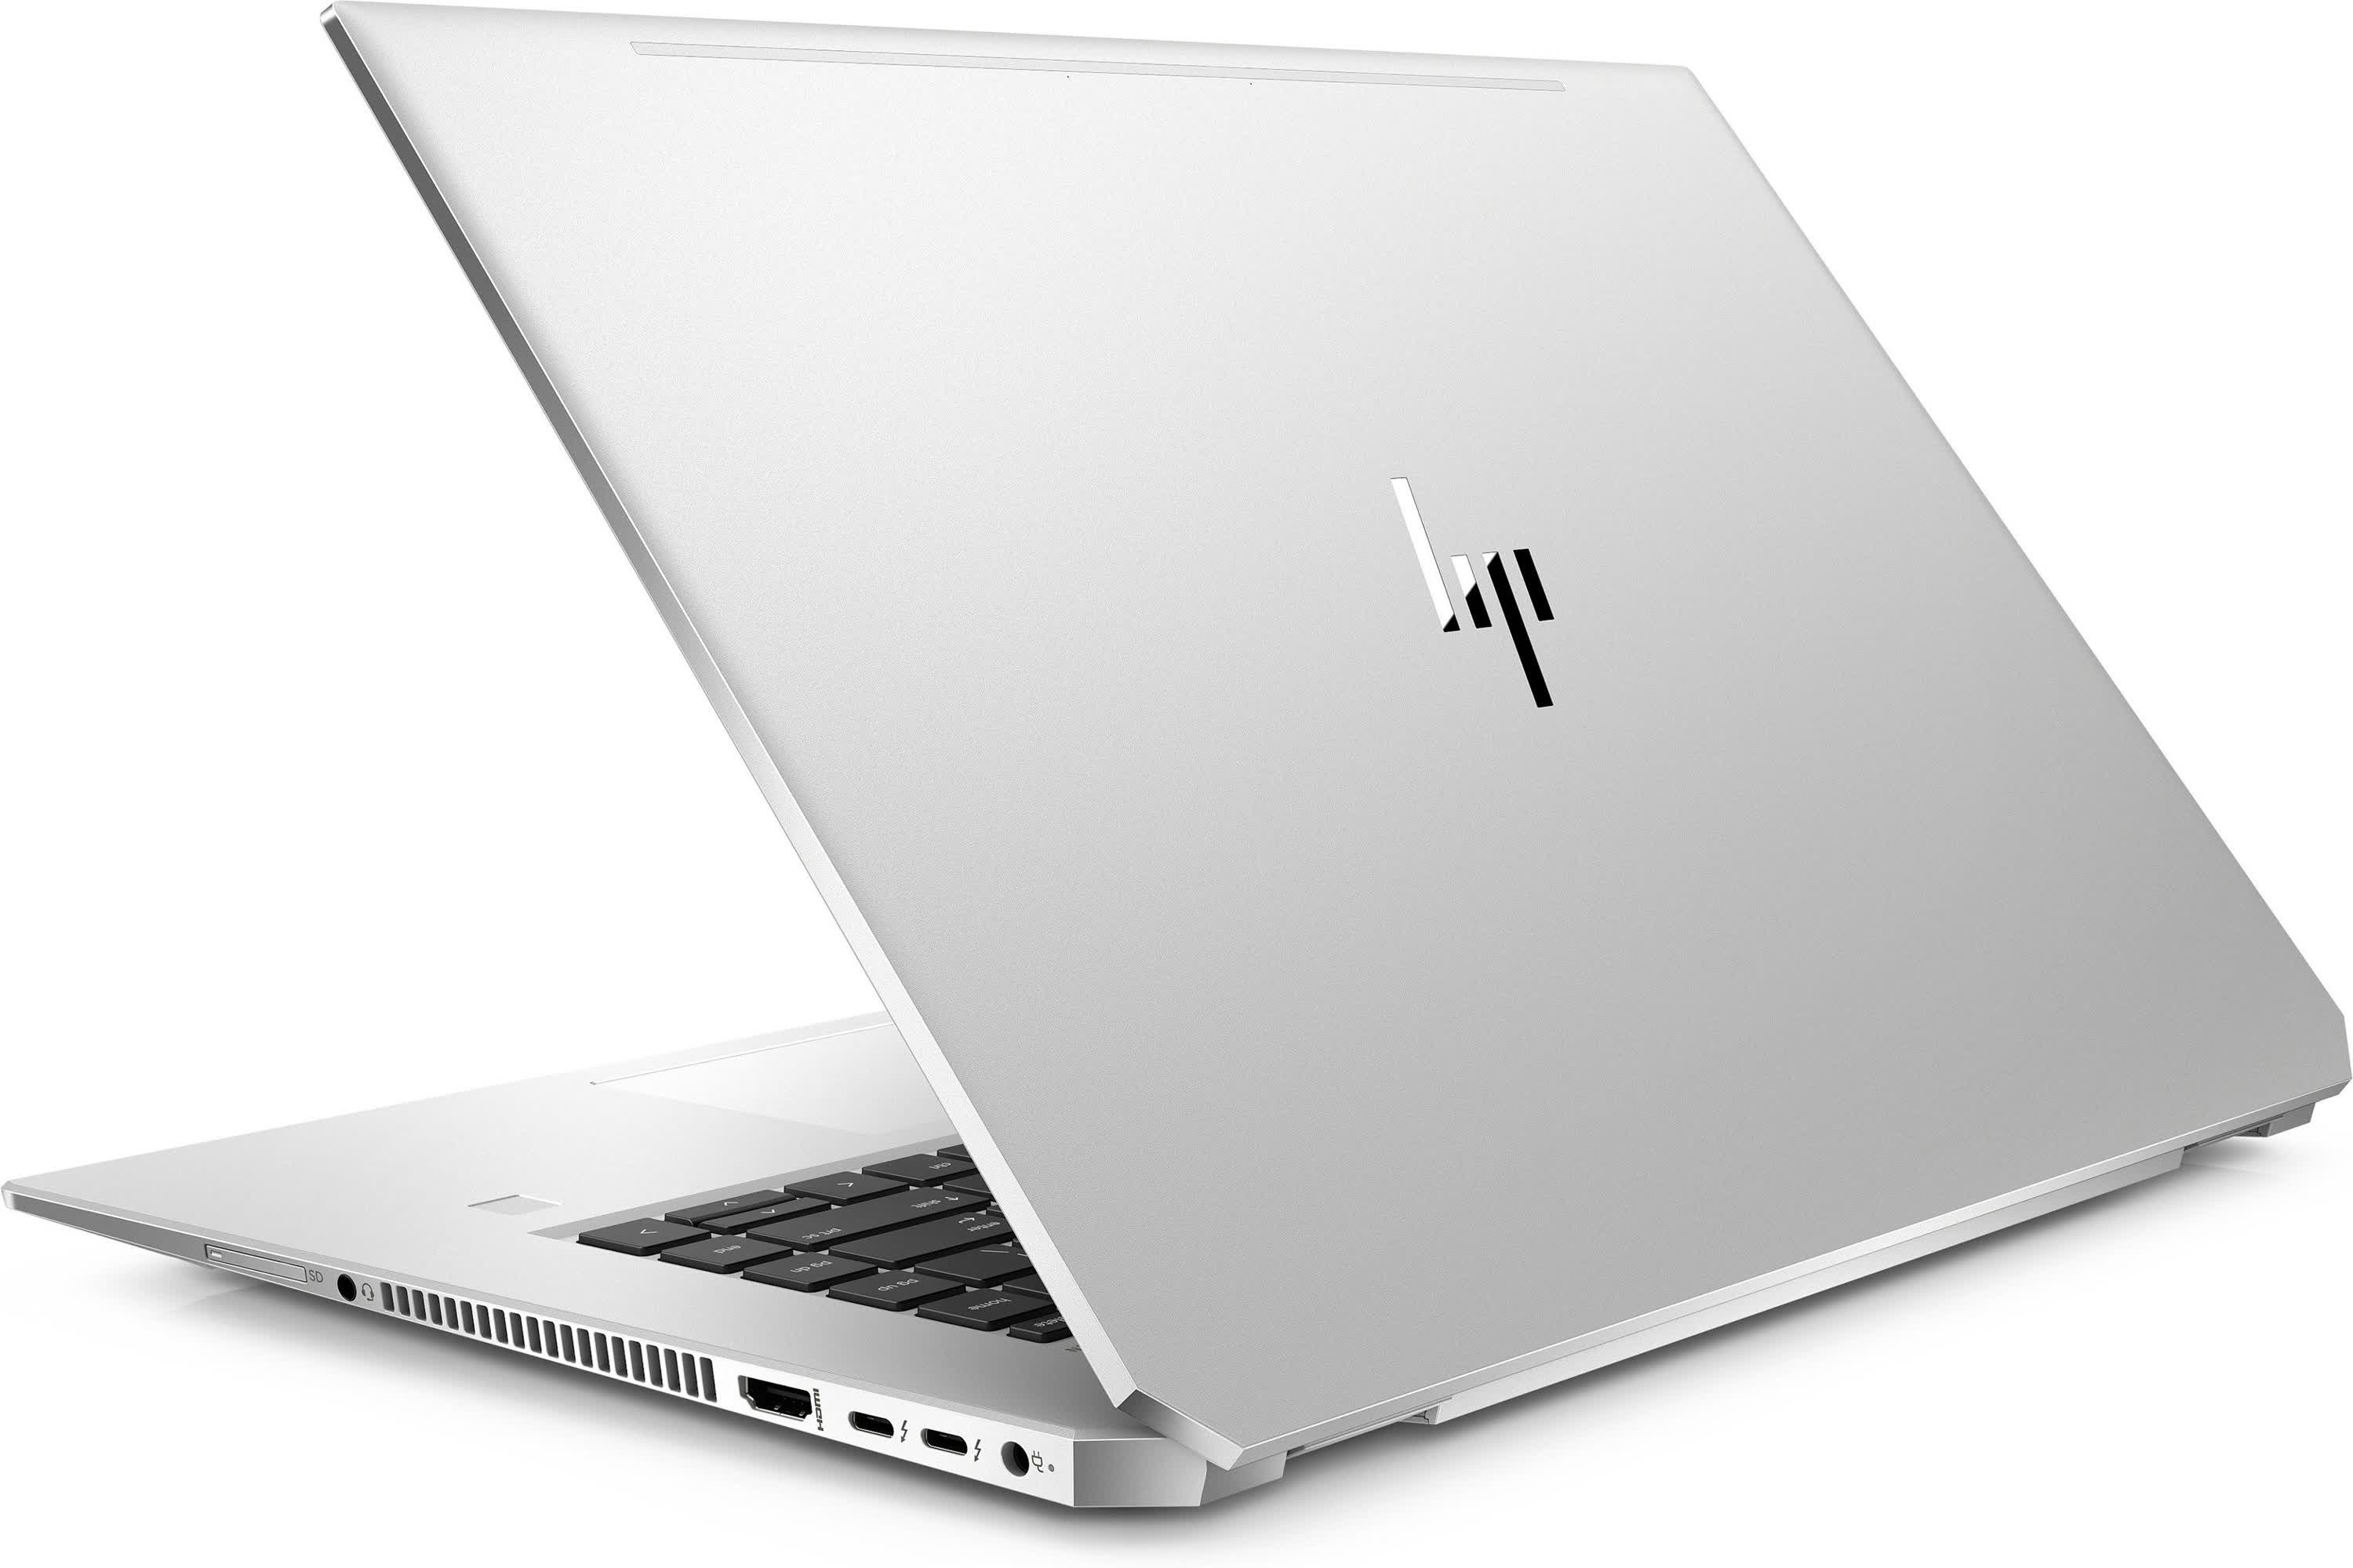 HP EliteBook 1050 G1 Reviews - TechSpot